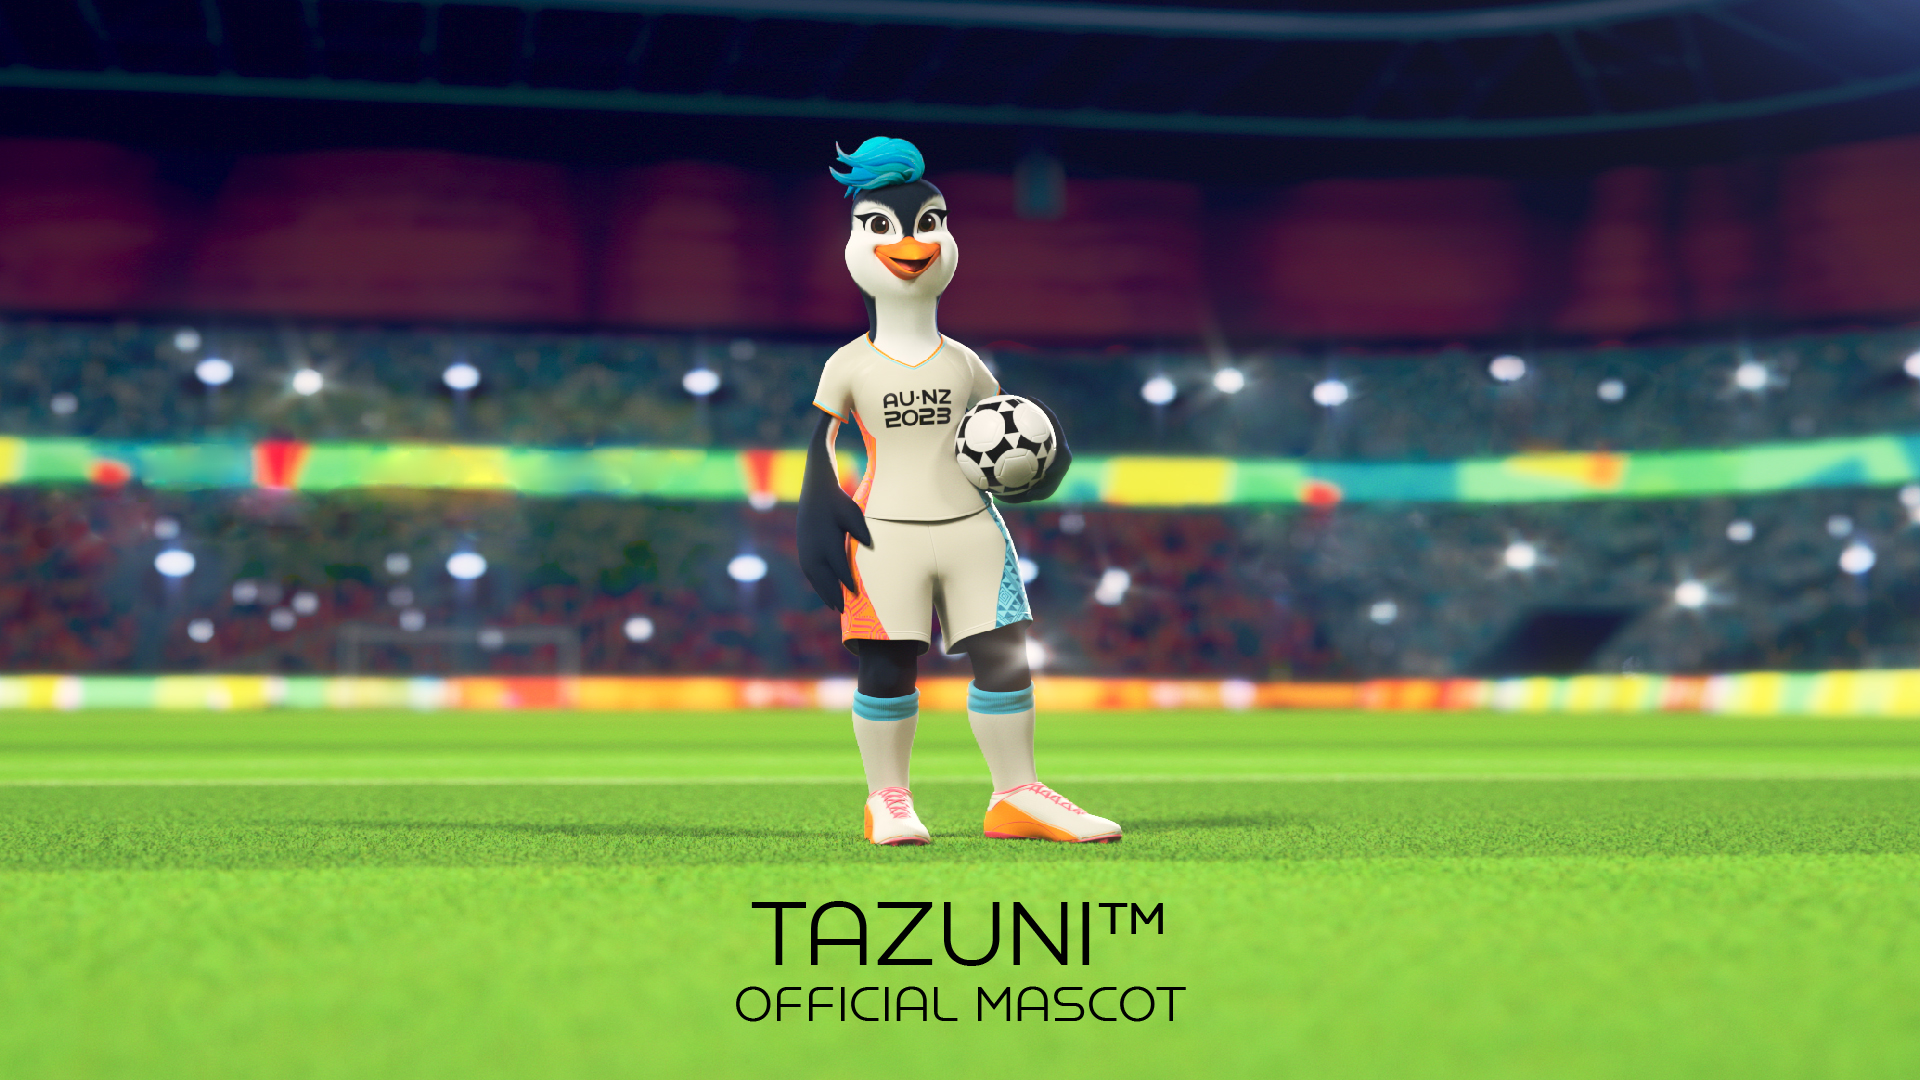 20221018 BRM OM Social Assets 19x6 02 01 1 - Tazuni, la mascota oficial de la Copa del Mundo Femenil del 2023